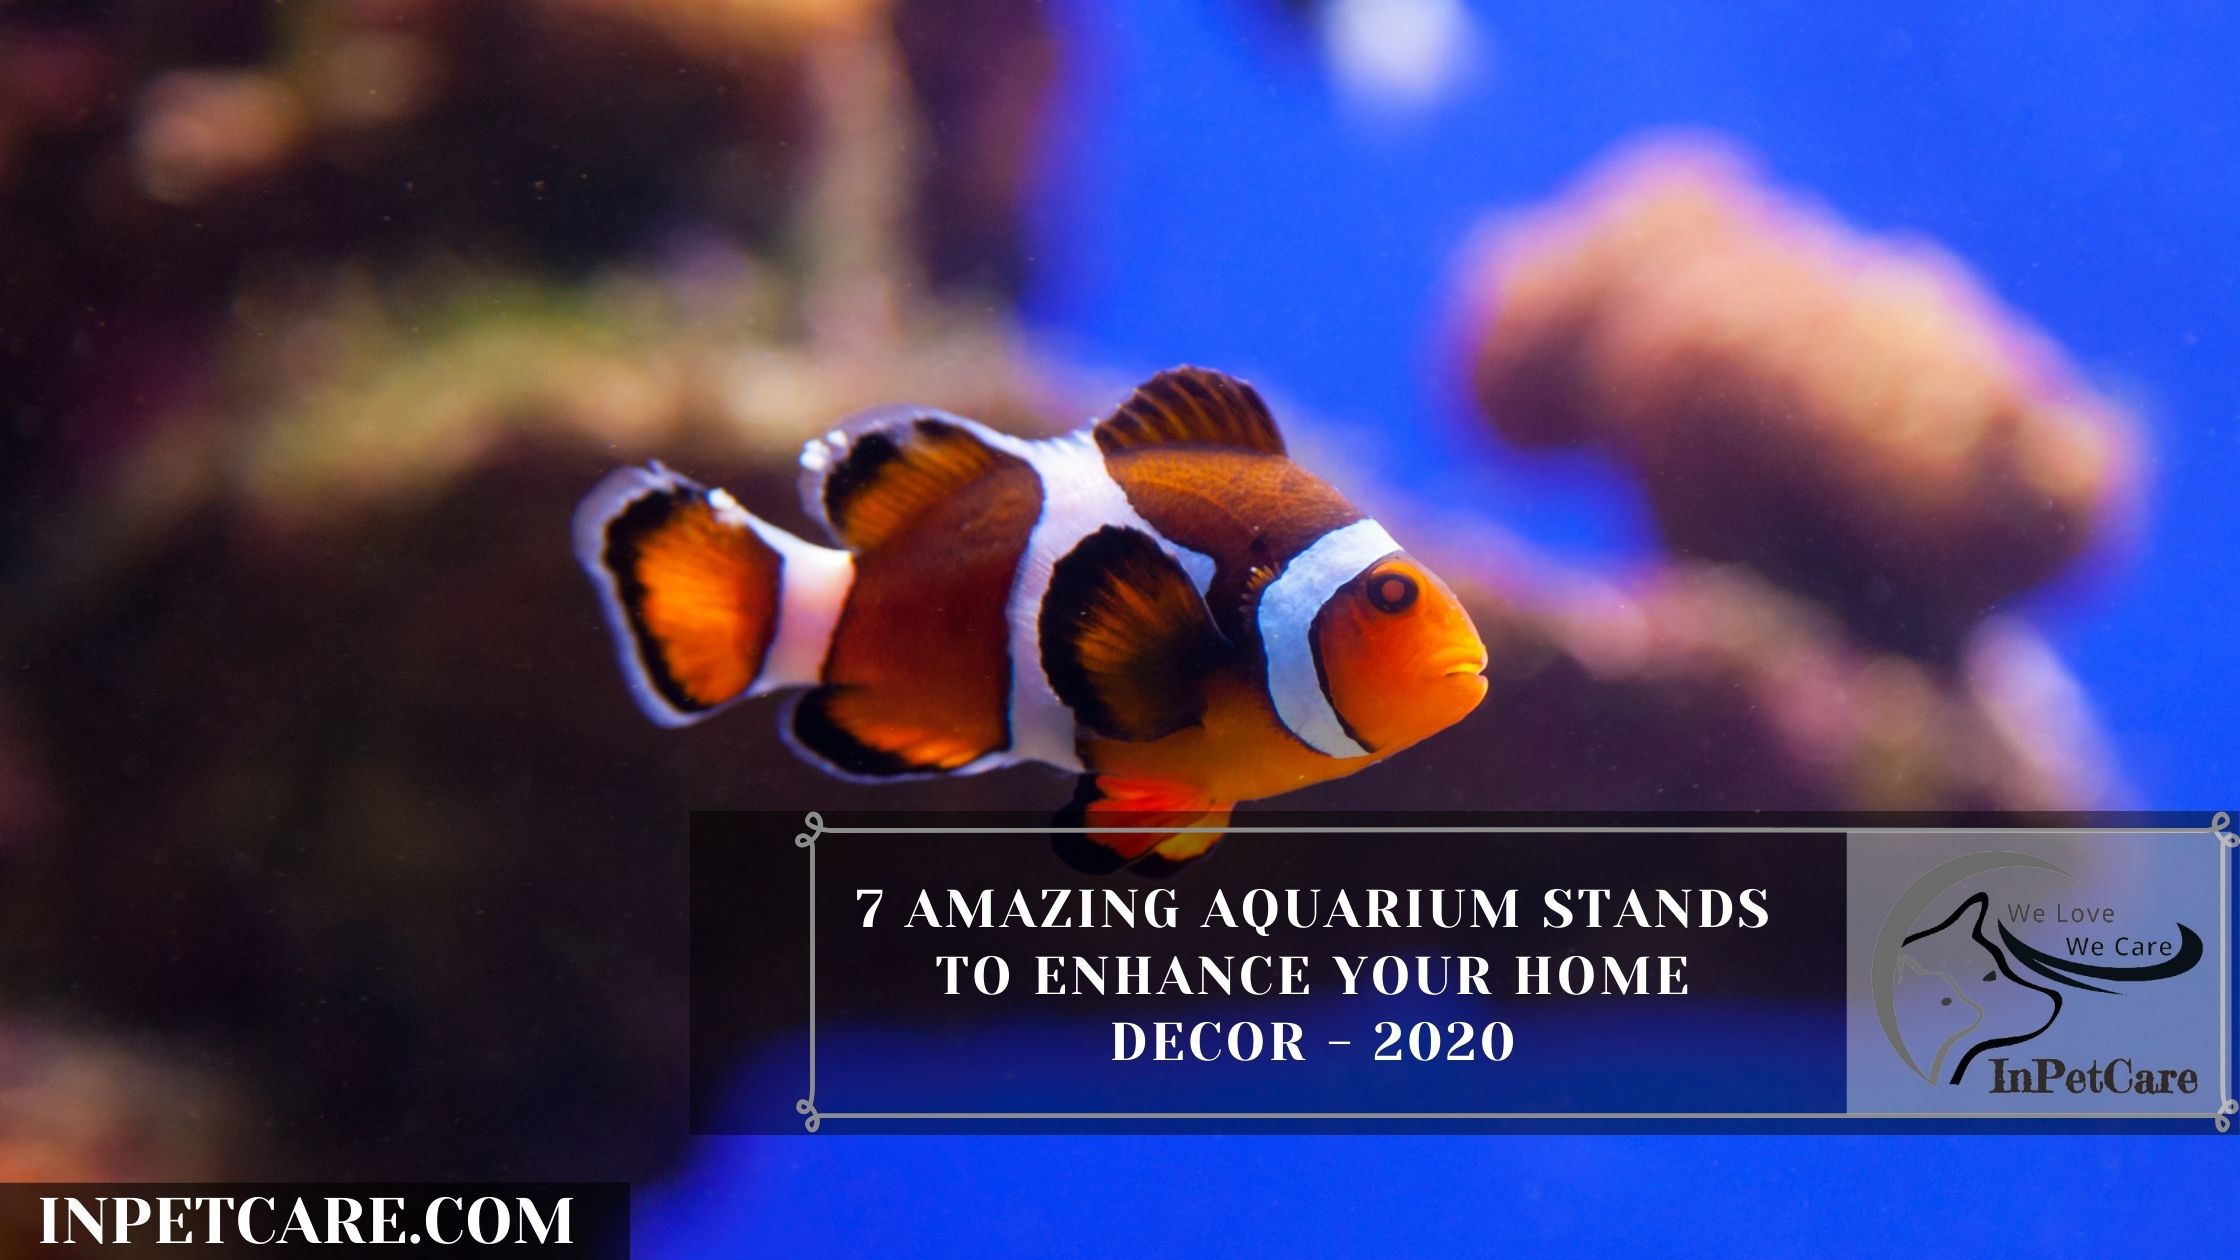 7 Amazing Aquarium Stands To Enhance Your Home Decor - 2020